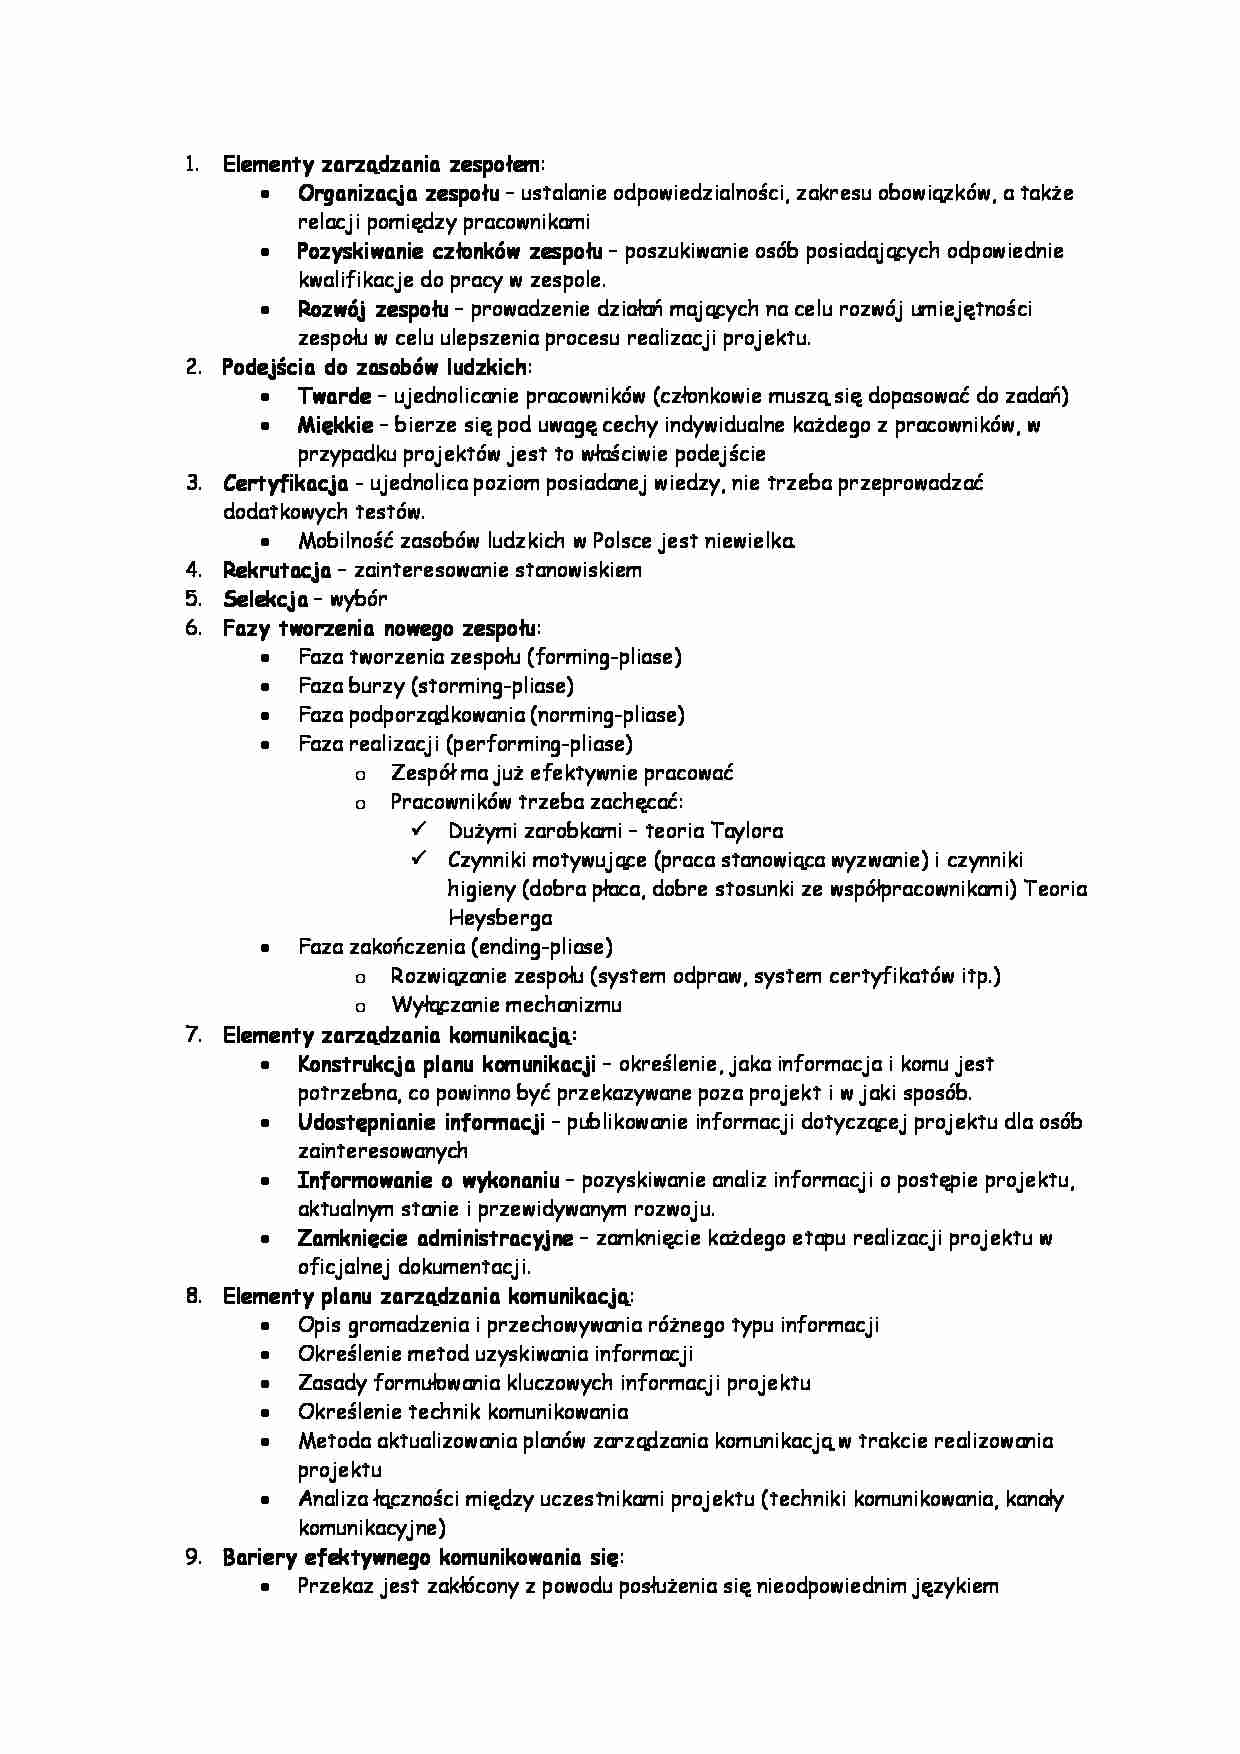 Elementy zarządzania 1 - strona 1